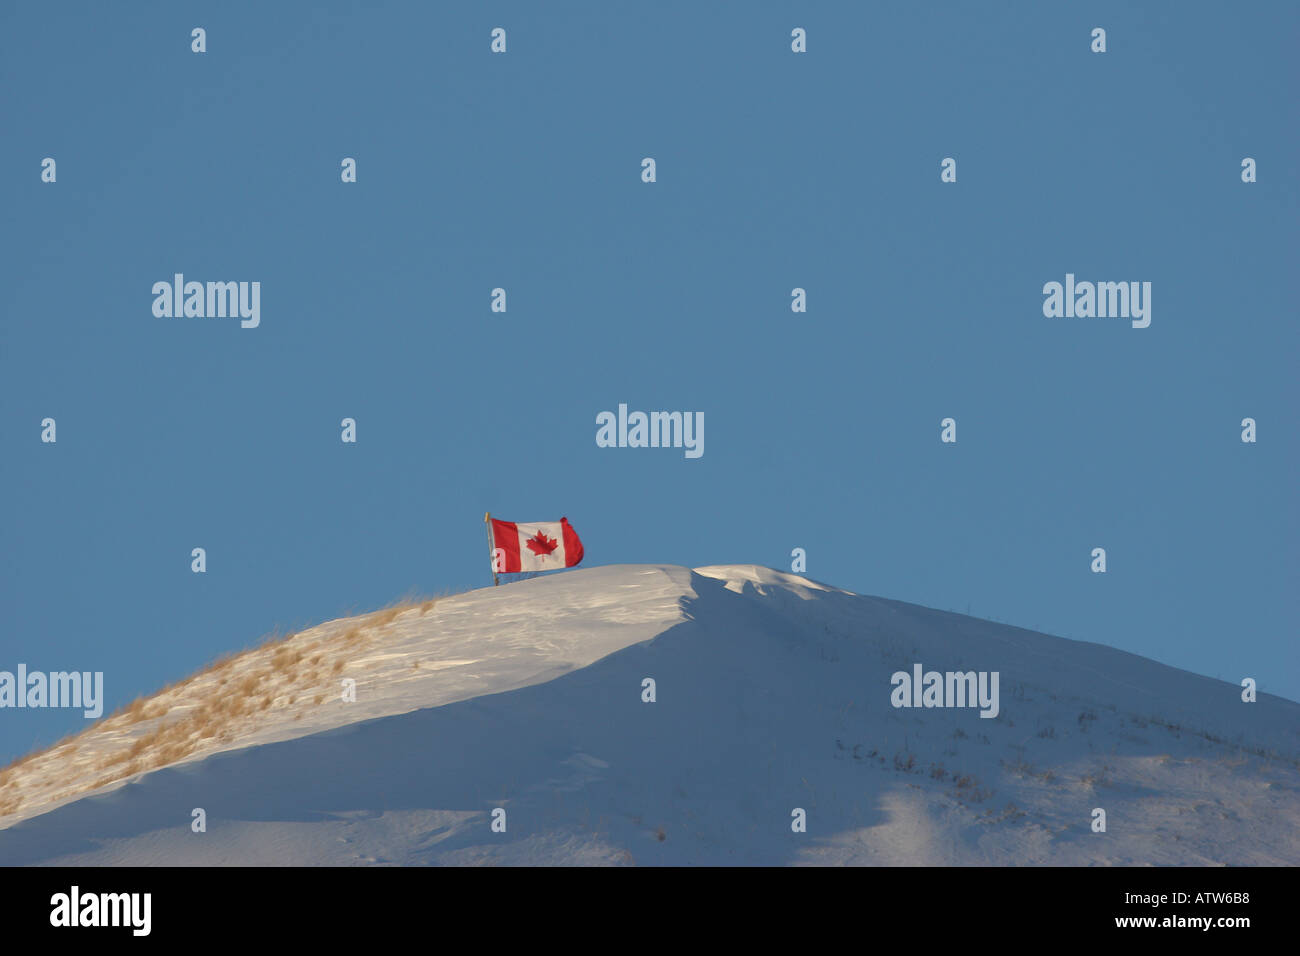 Drapeau canadien sur la colline couverte de neige dans la région de scenic Saskatchewan Canada Banque D'Images